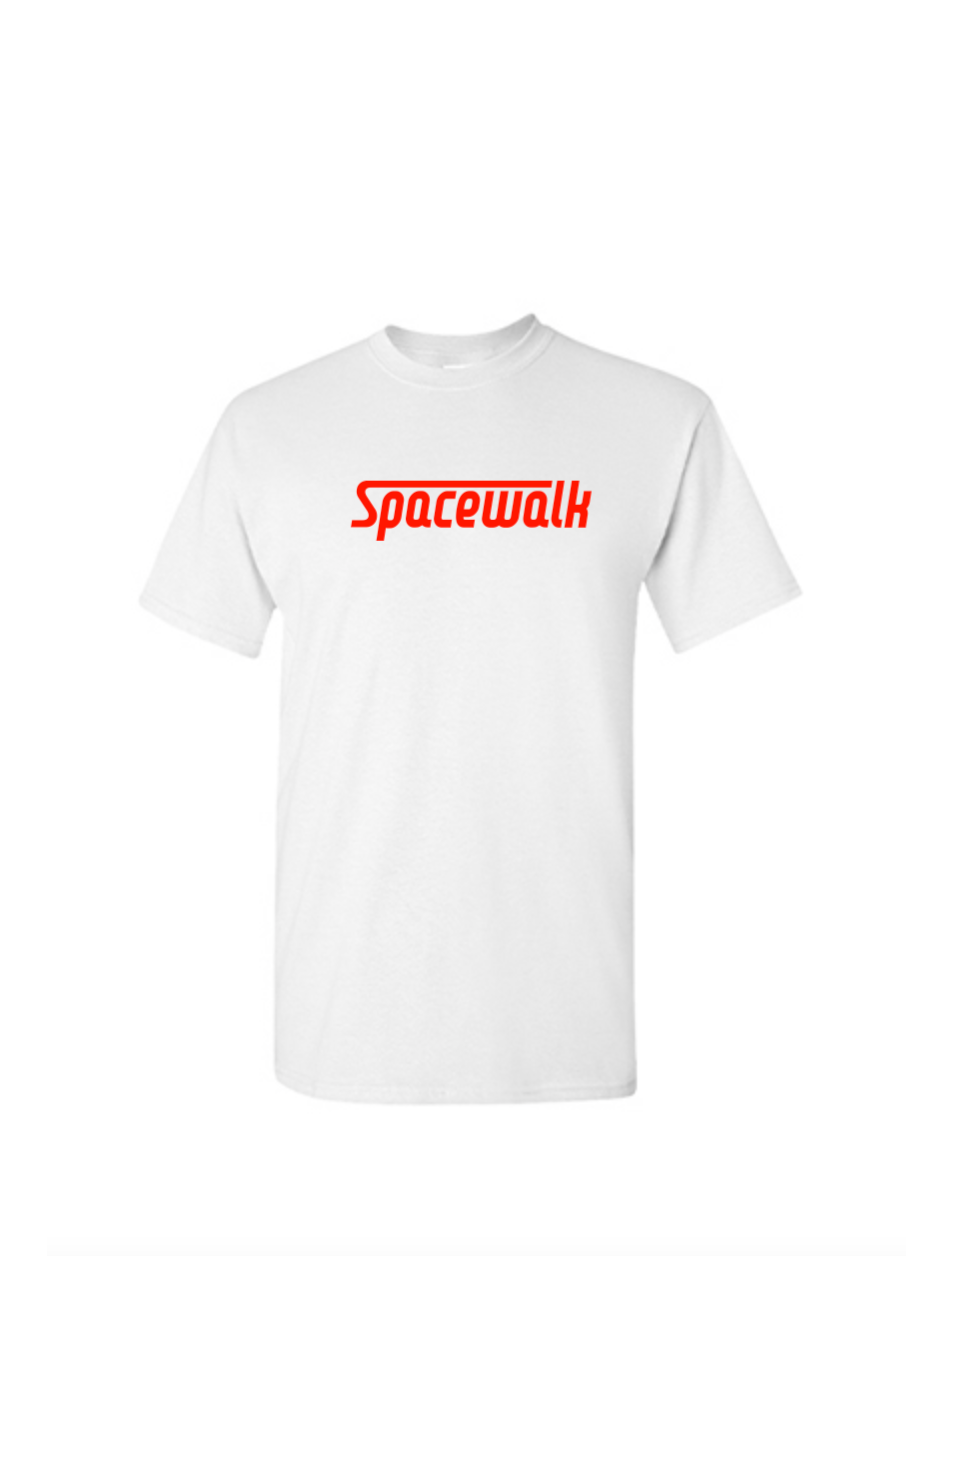 Spacewalk T-Shirt